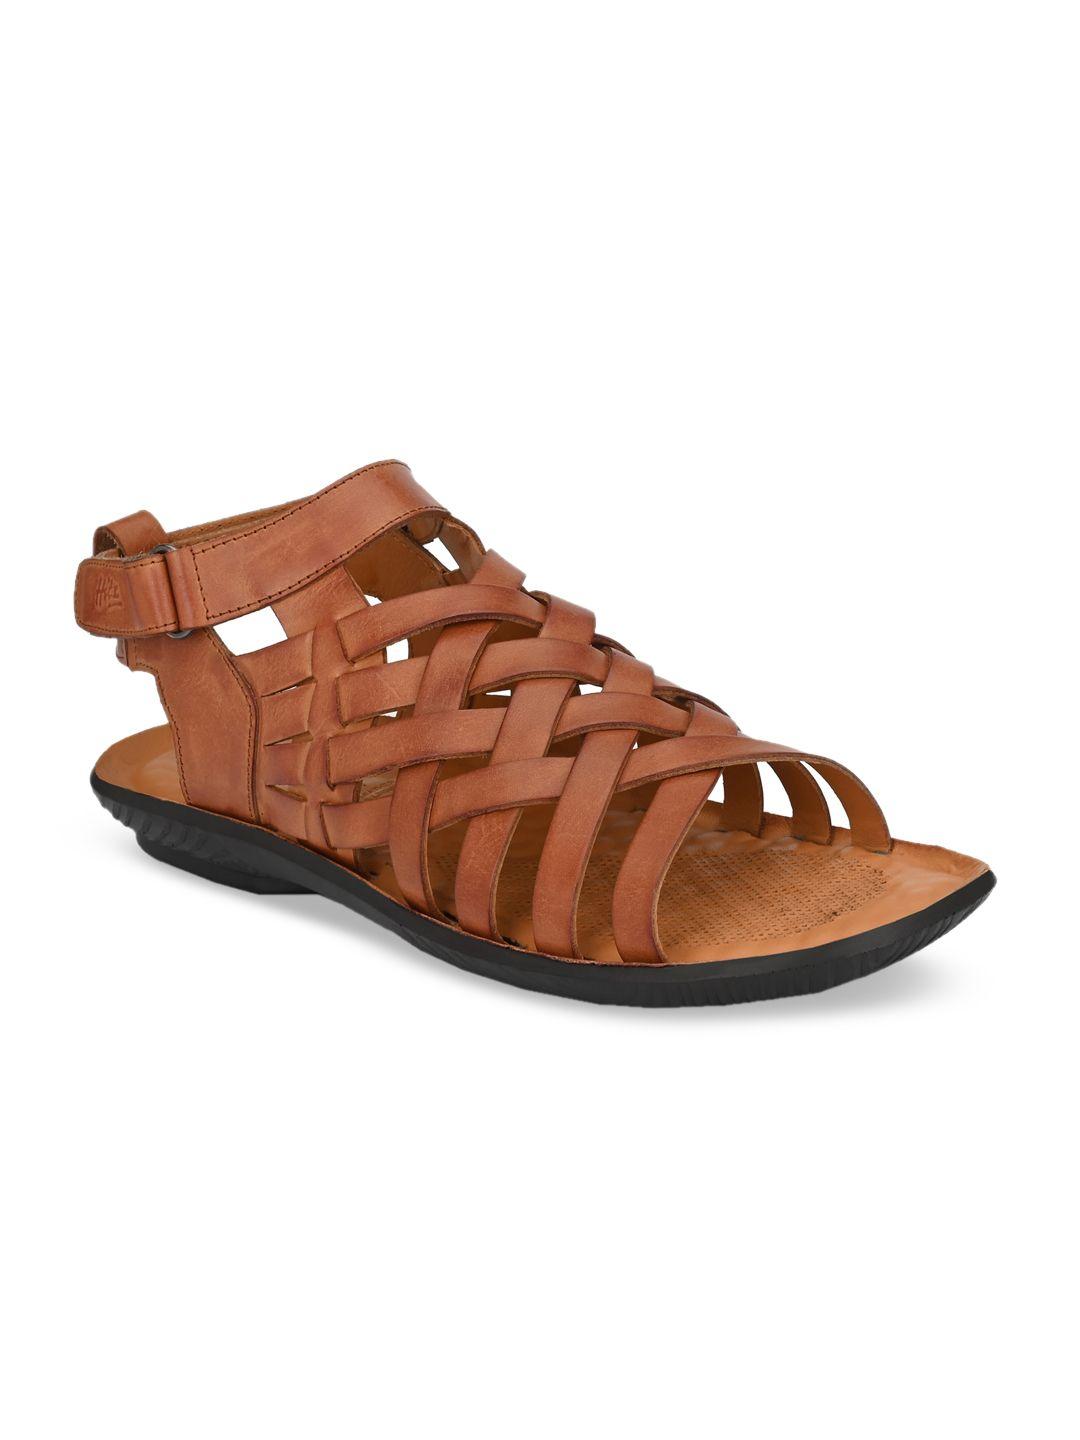 hitz-men-tan-leather-comfort-sandals